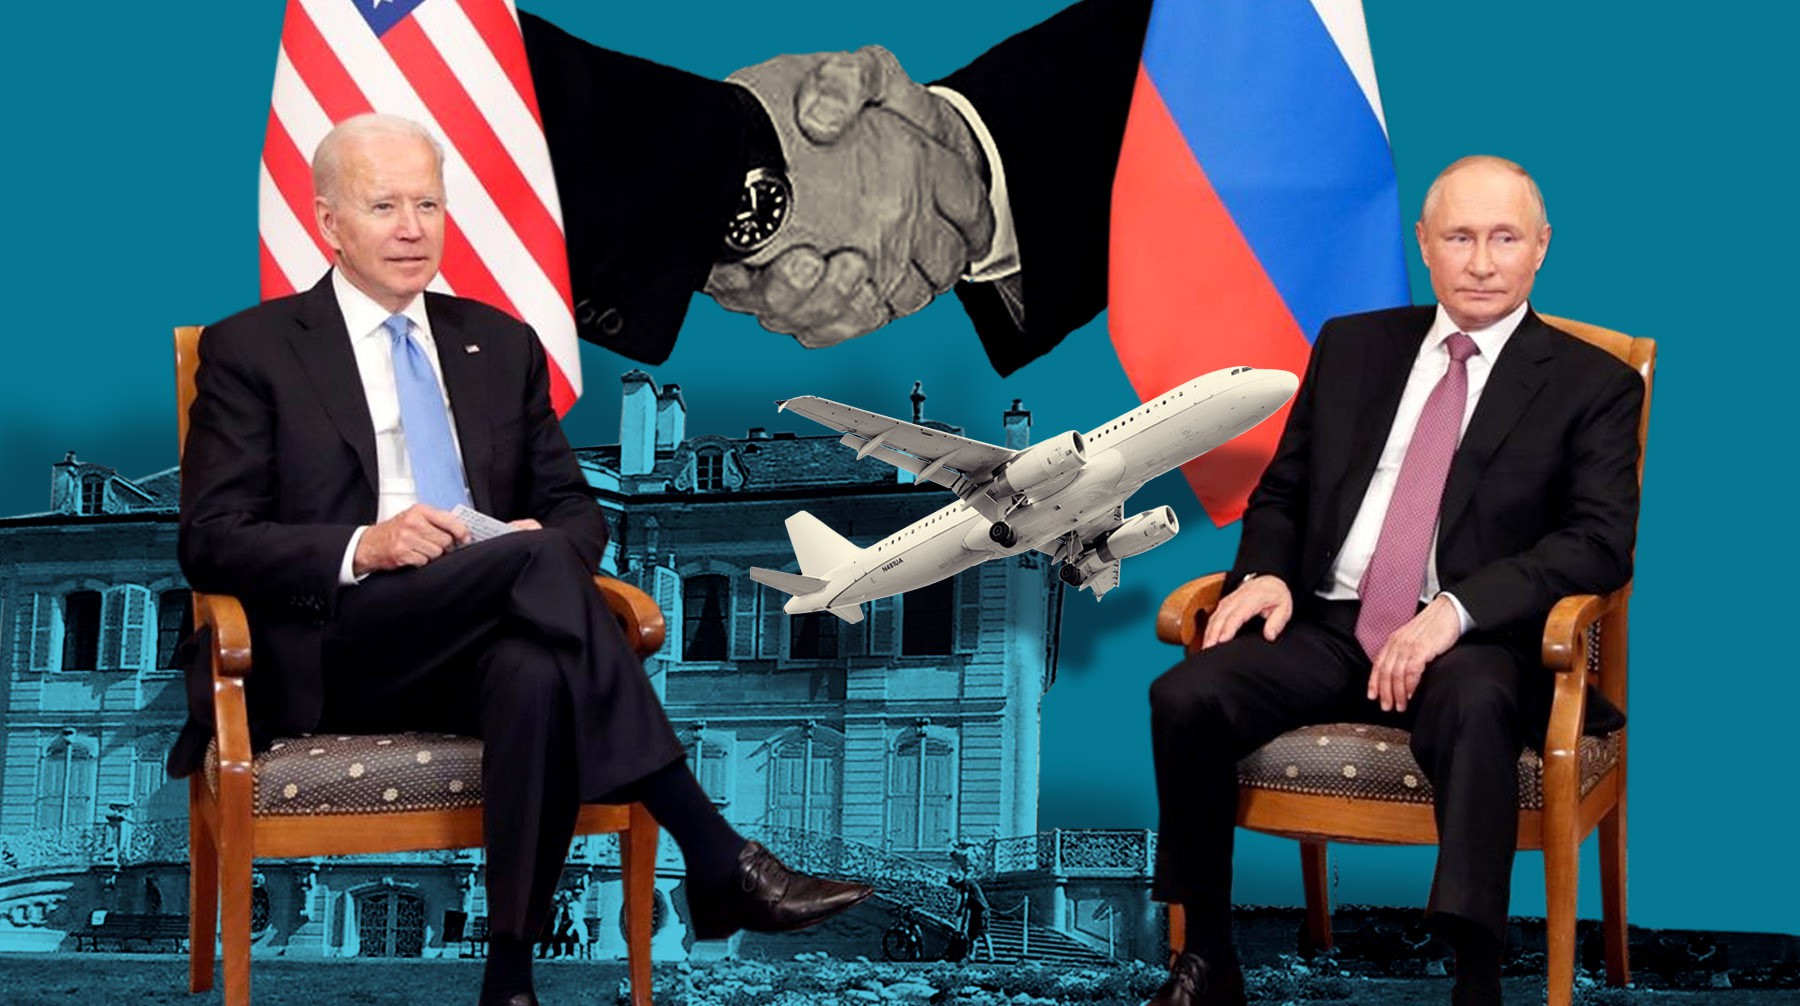 Dailystorm - Флаги, букеты, колючая проволока: чем запомнится встреча Путина и Байдена в Женеве